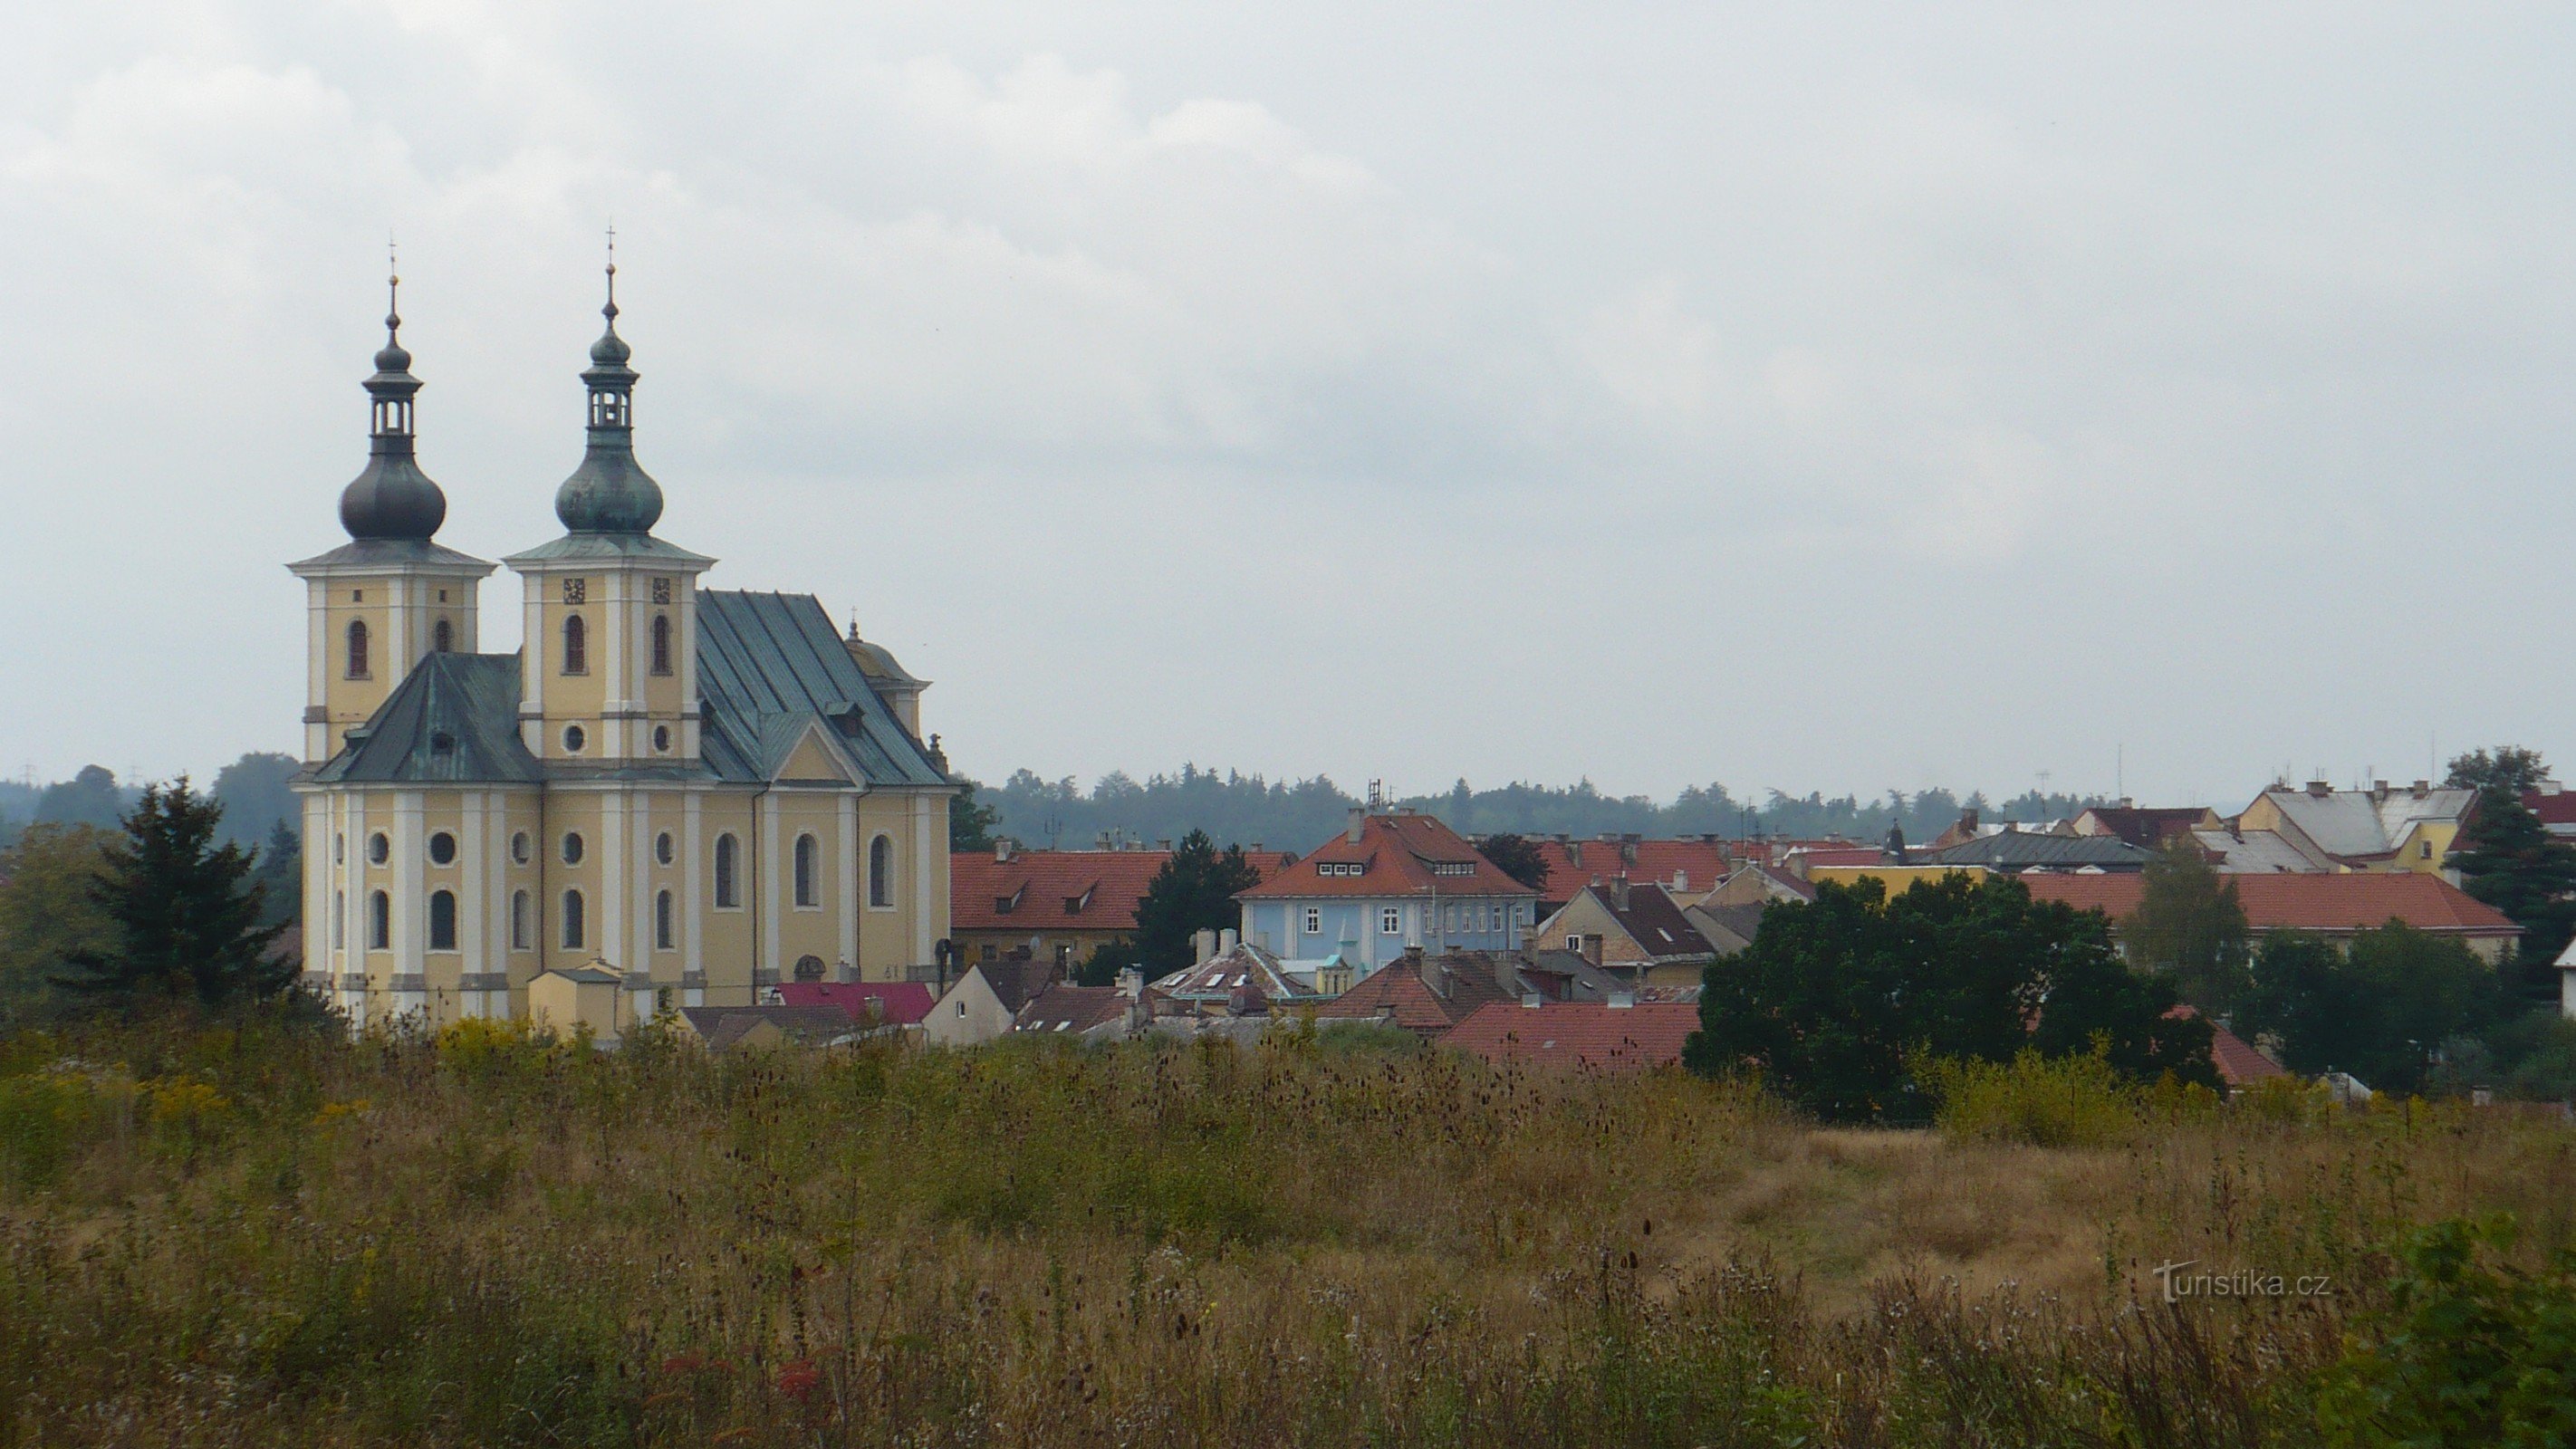 Kynšperk nad Ohří - Chiesa dell'Assunzione della Beata Vergine Maria